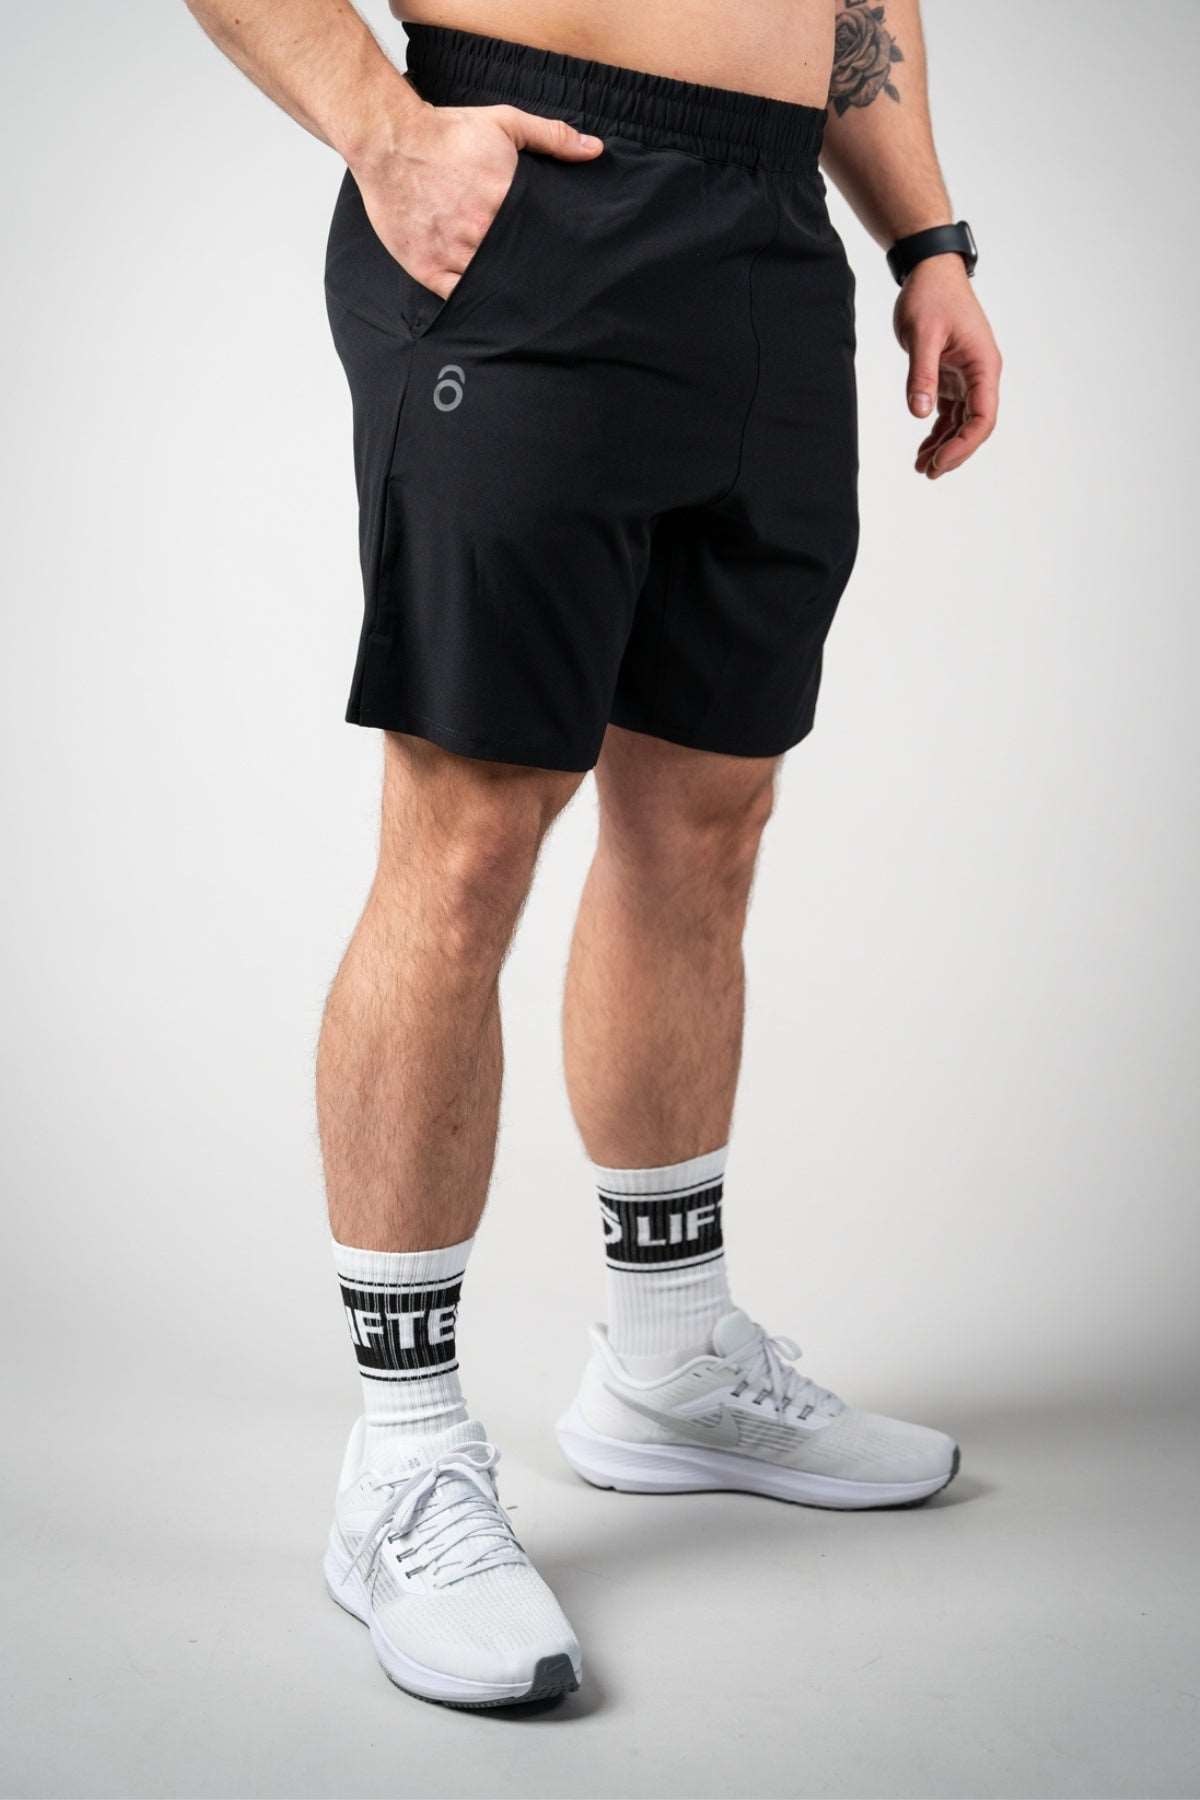 Lifters Raw Shorts - Long Cut Lifters Wear Black S 